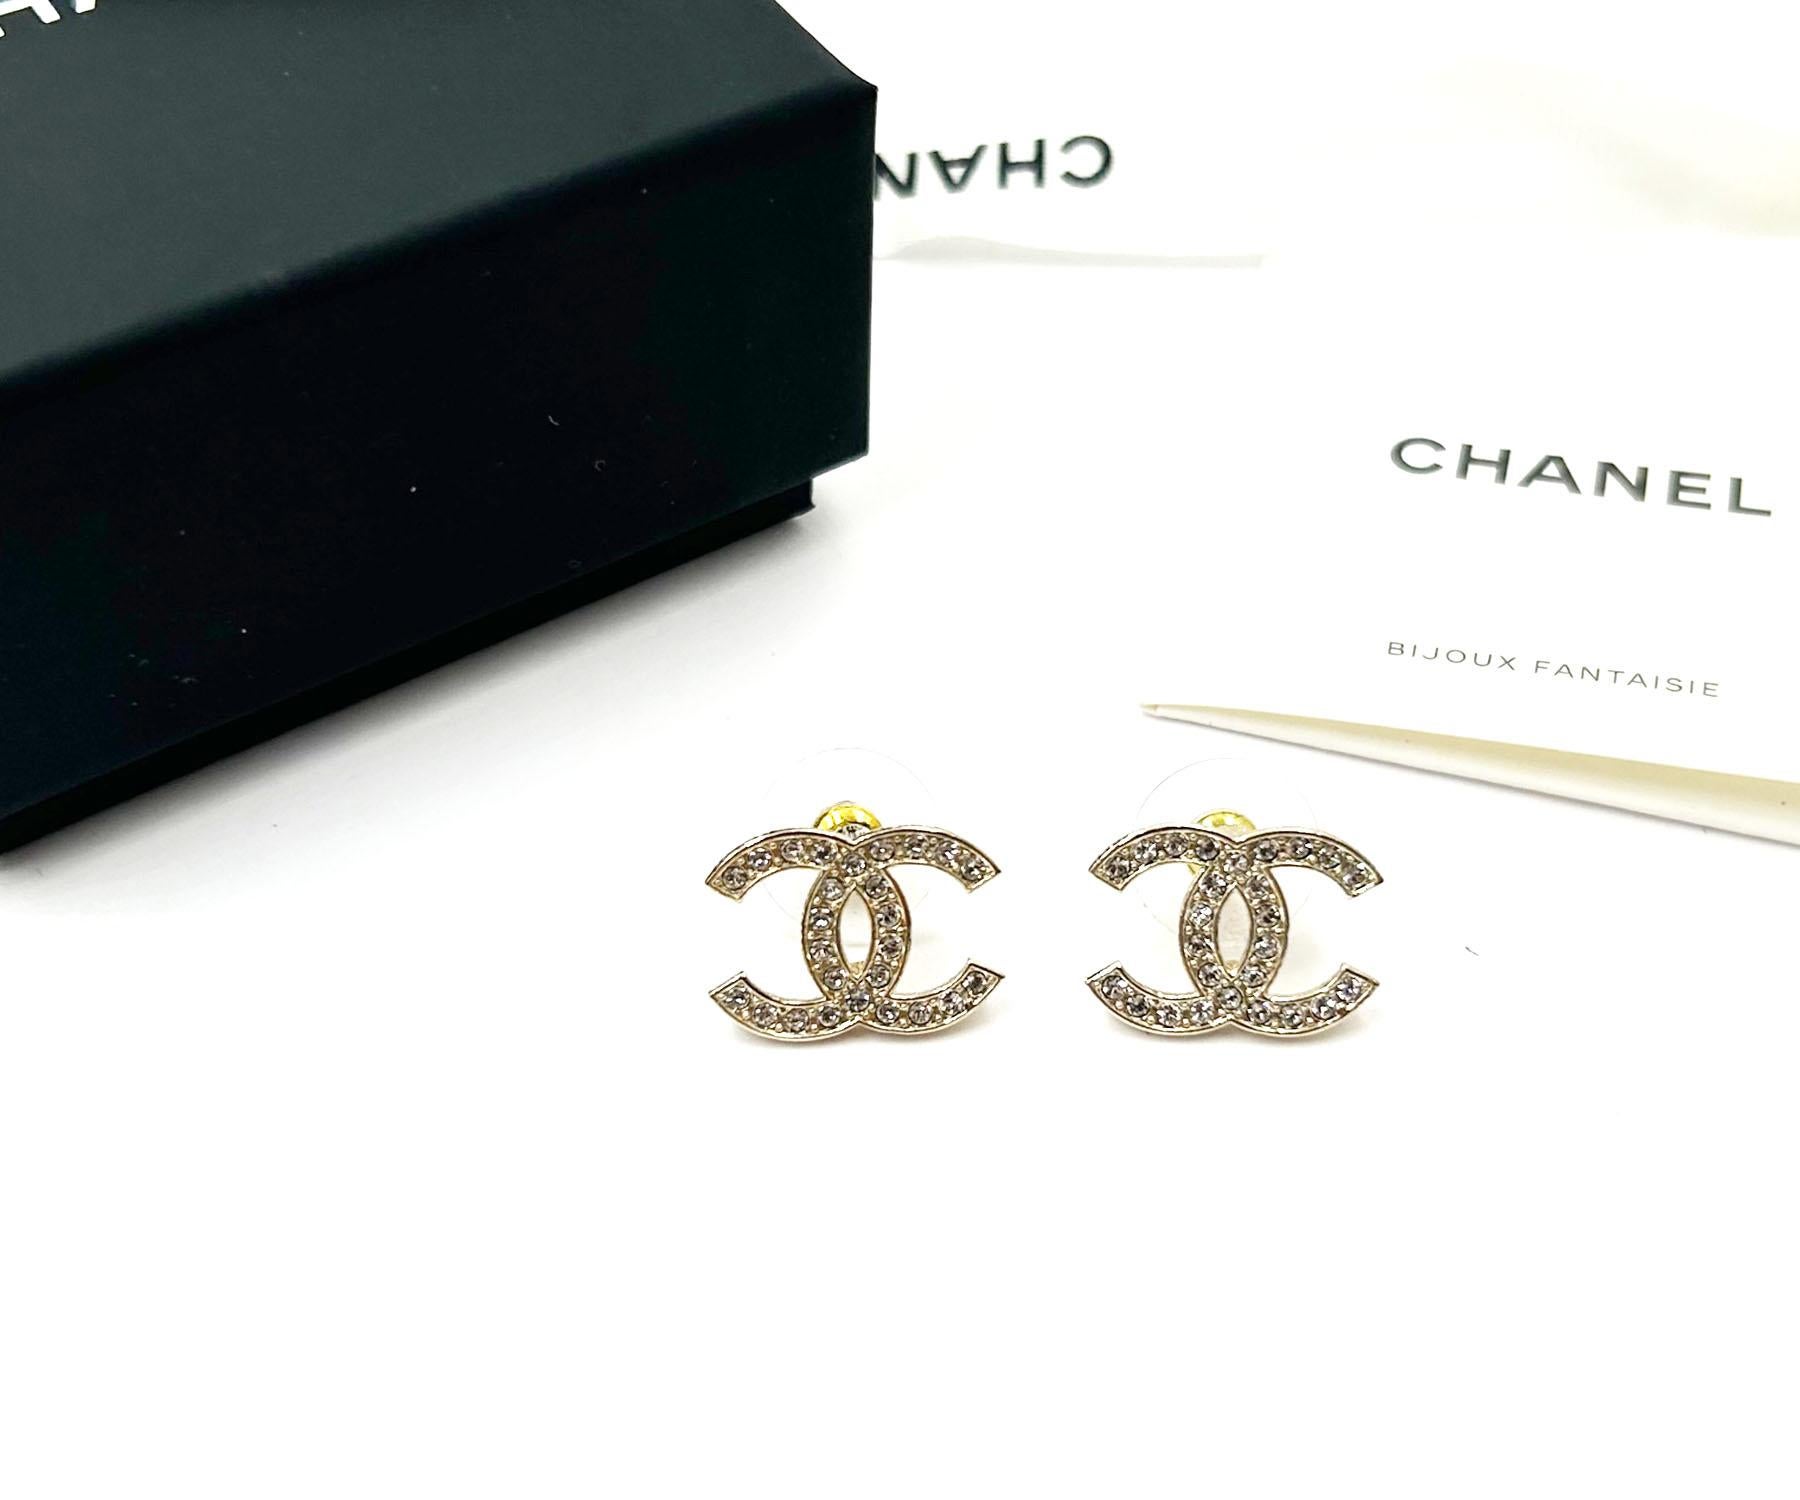 Chanel Brand New Classic Gold CC Large Piercing Ohrringe

*Markiert 23
*Hergestellt in Frankreich
*Wird mit der Originalverpackung, dem Etui, dem Booklet und dem Band geliefert.
*Fabrikneu

-Sie ist ungefähr 0,5